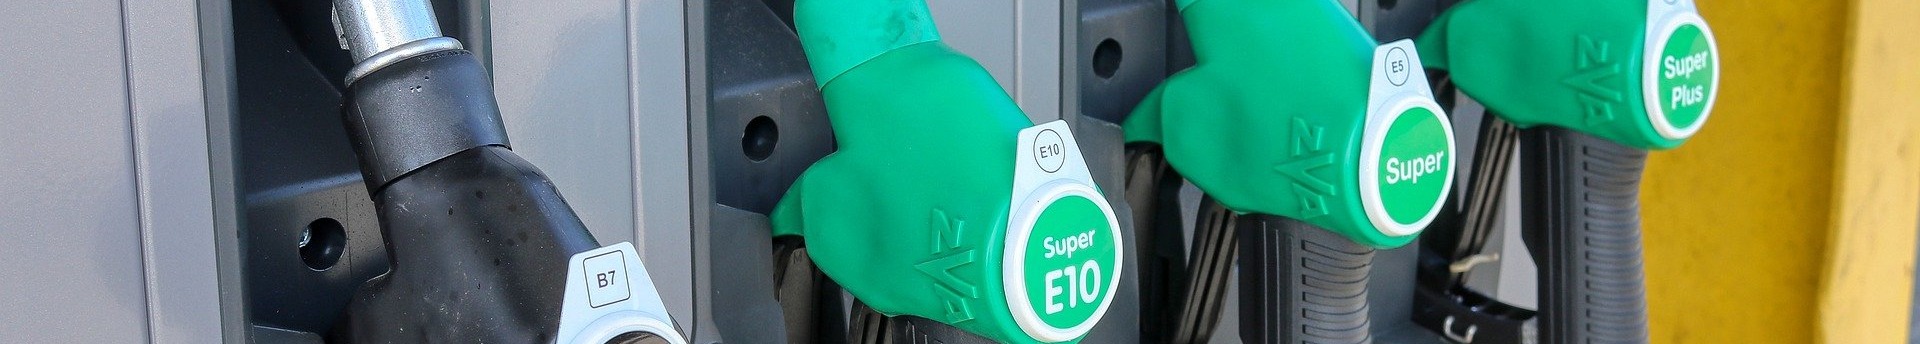 November 15-től legfeljebb 480 forint lehet egy liter benzin vagy gázolaj ára - megjelent a rendelet